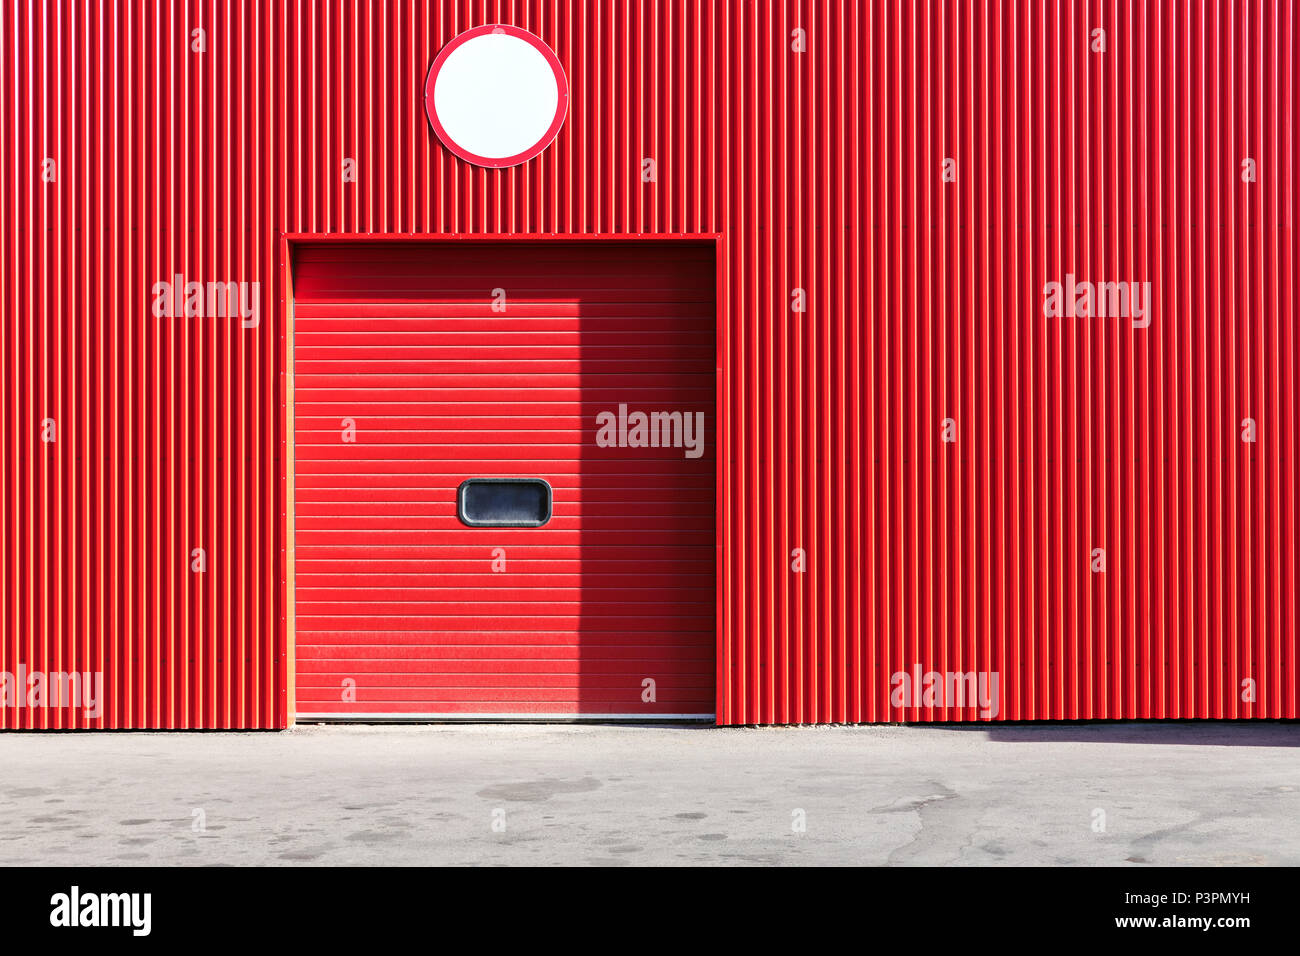 Mur d'entrepôt métallique rouge avec porte volet roulant fermé Banque D'Images